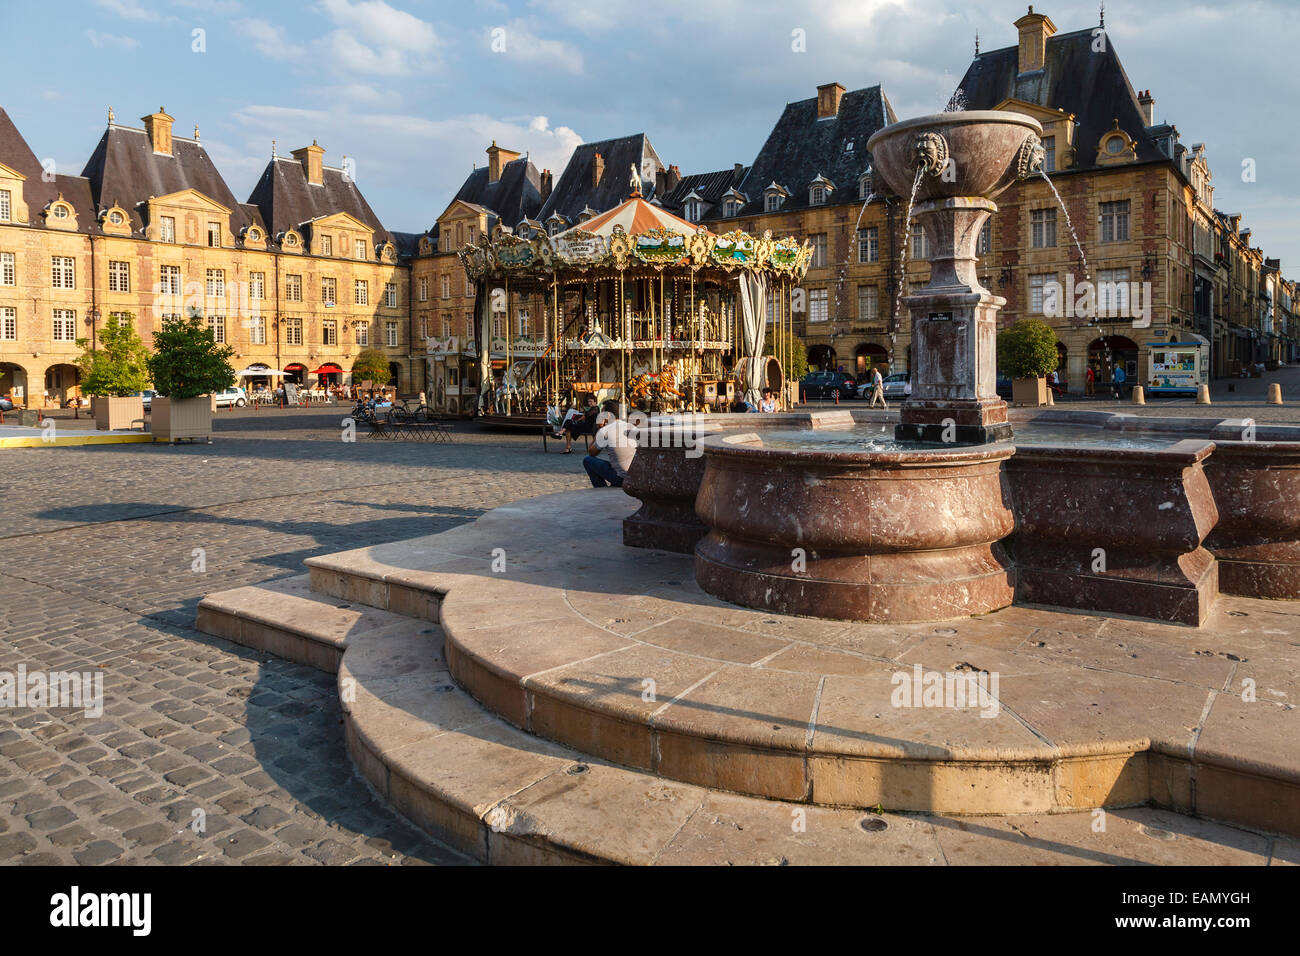 Place Ducale, Charleville-Mézières, Ardennes, France Banque D'Images